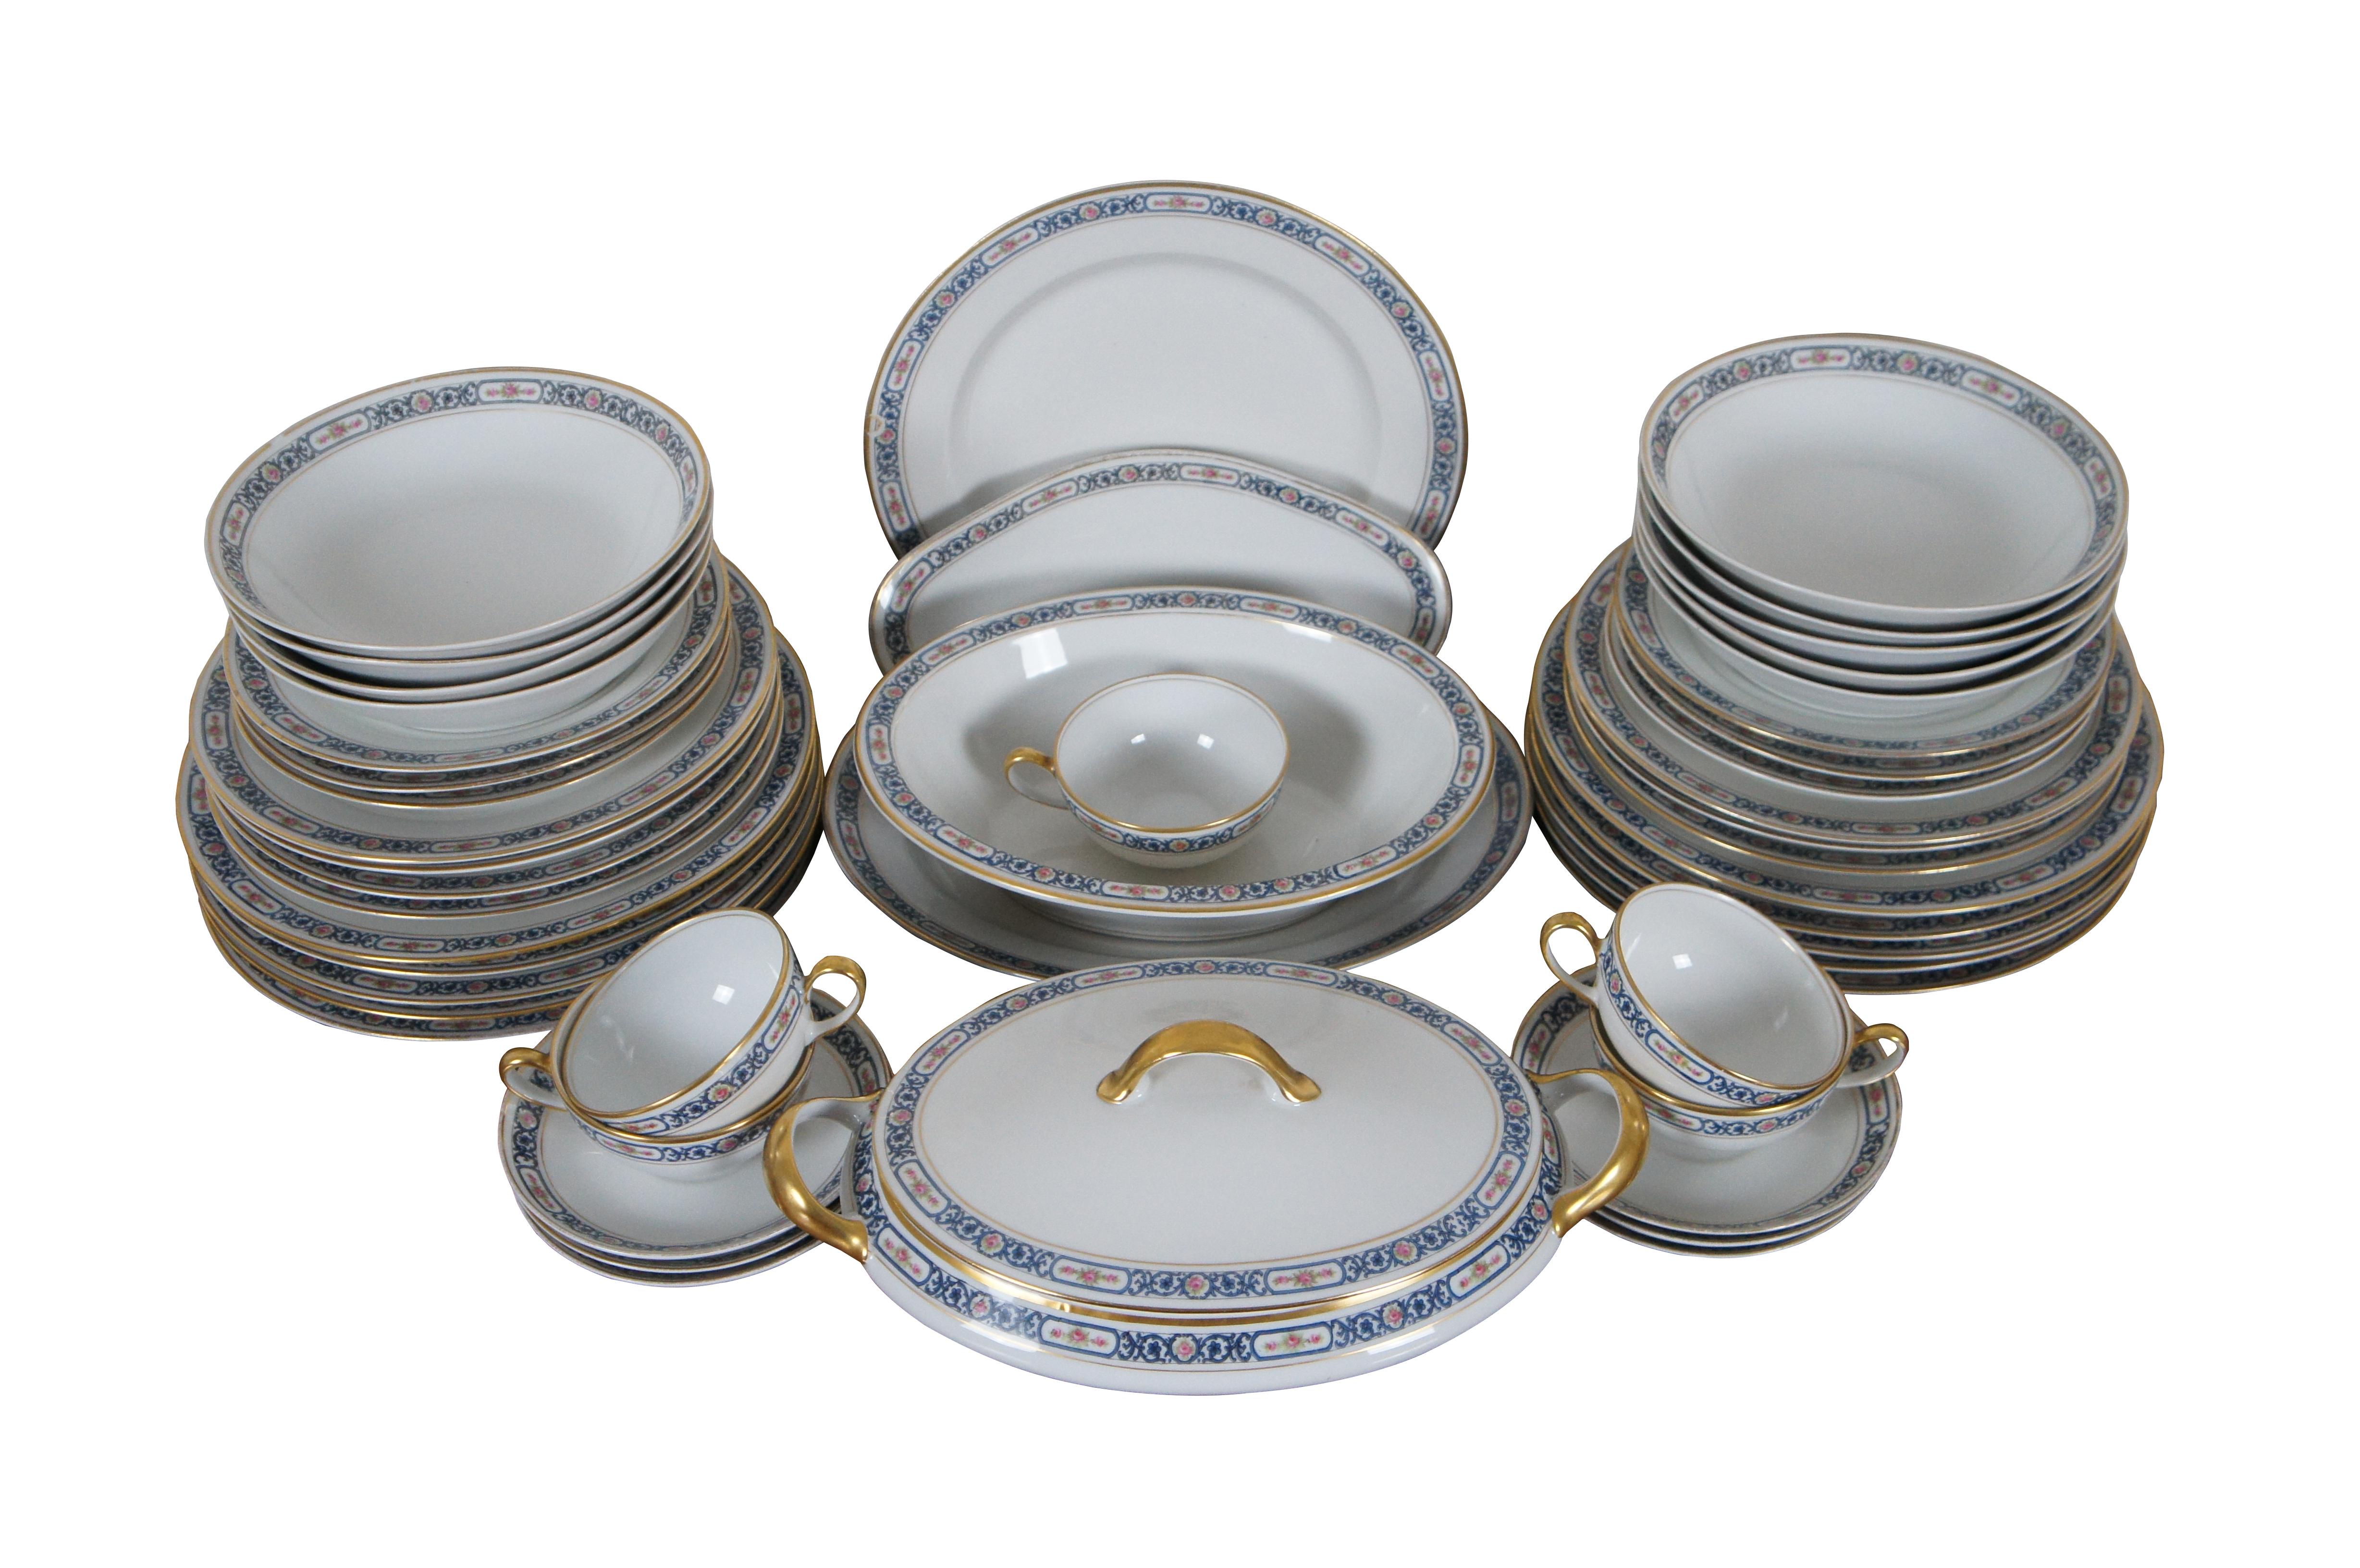 Exquisite antike 48 Stück Französisch La Porcelain Limousine Limoges Porzellan Geschirr. Mit einem Band aus geflochtenen blauen Ranken, die rosa Rosen einrahmen, und einer vergoldeten Verzierung.

La Porcelaine Limousin